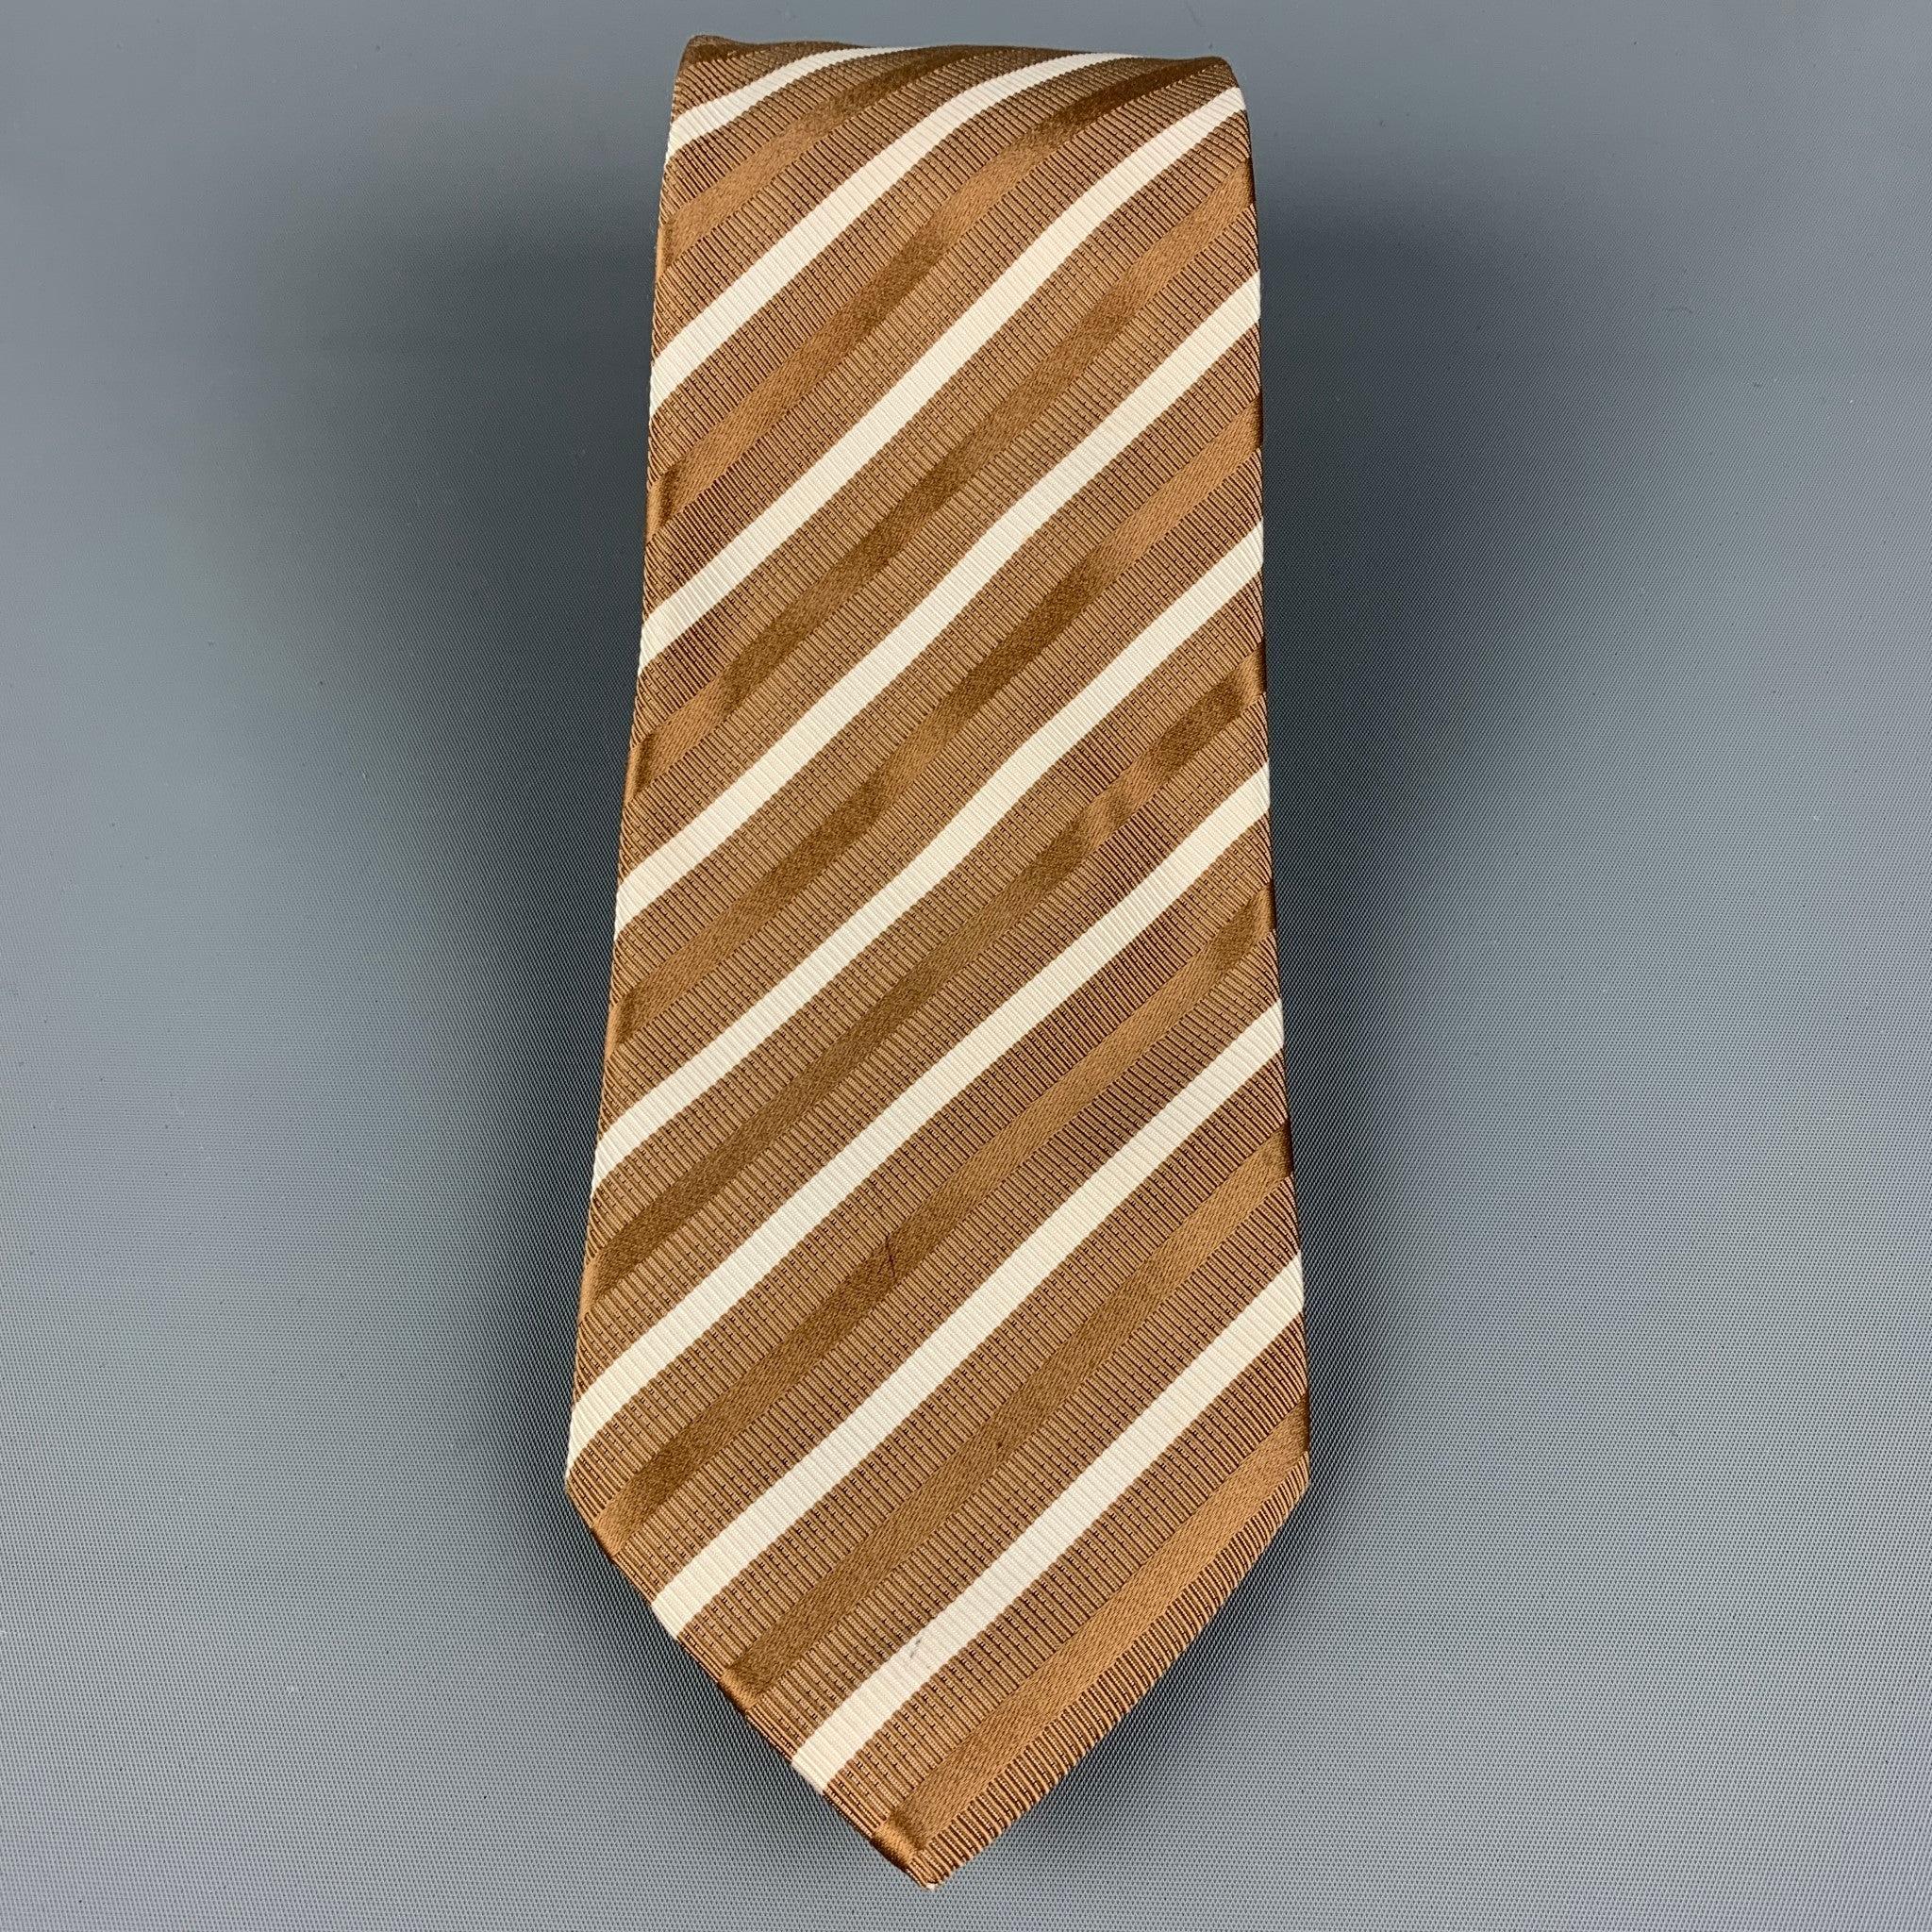 BRIONI
Die Krawatte ist aus taupefarbener und weißer Seide mit diagonalem Streifendruck. Hergestellt in Italien. Sehr guter, gebrauchter Zustand, Breite: 3.75 Zoll  Länge: 61 Zoll 
  
  
 
Sui Generis-Referenz: 120413
Kategorie: Krawatte
Mehr